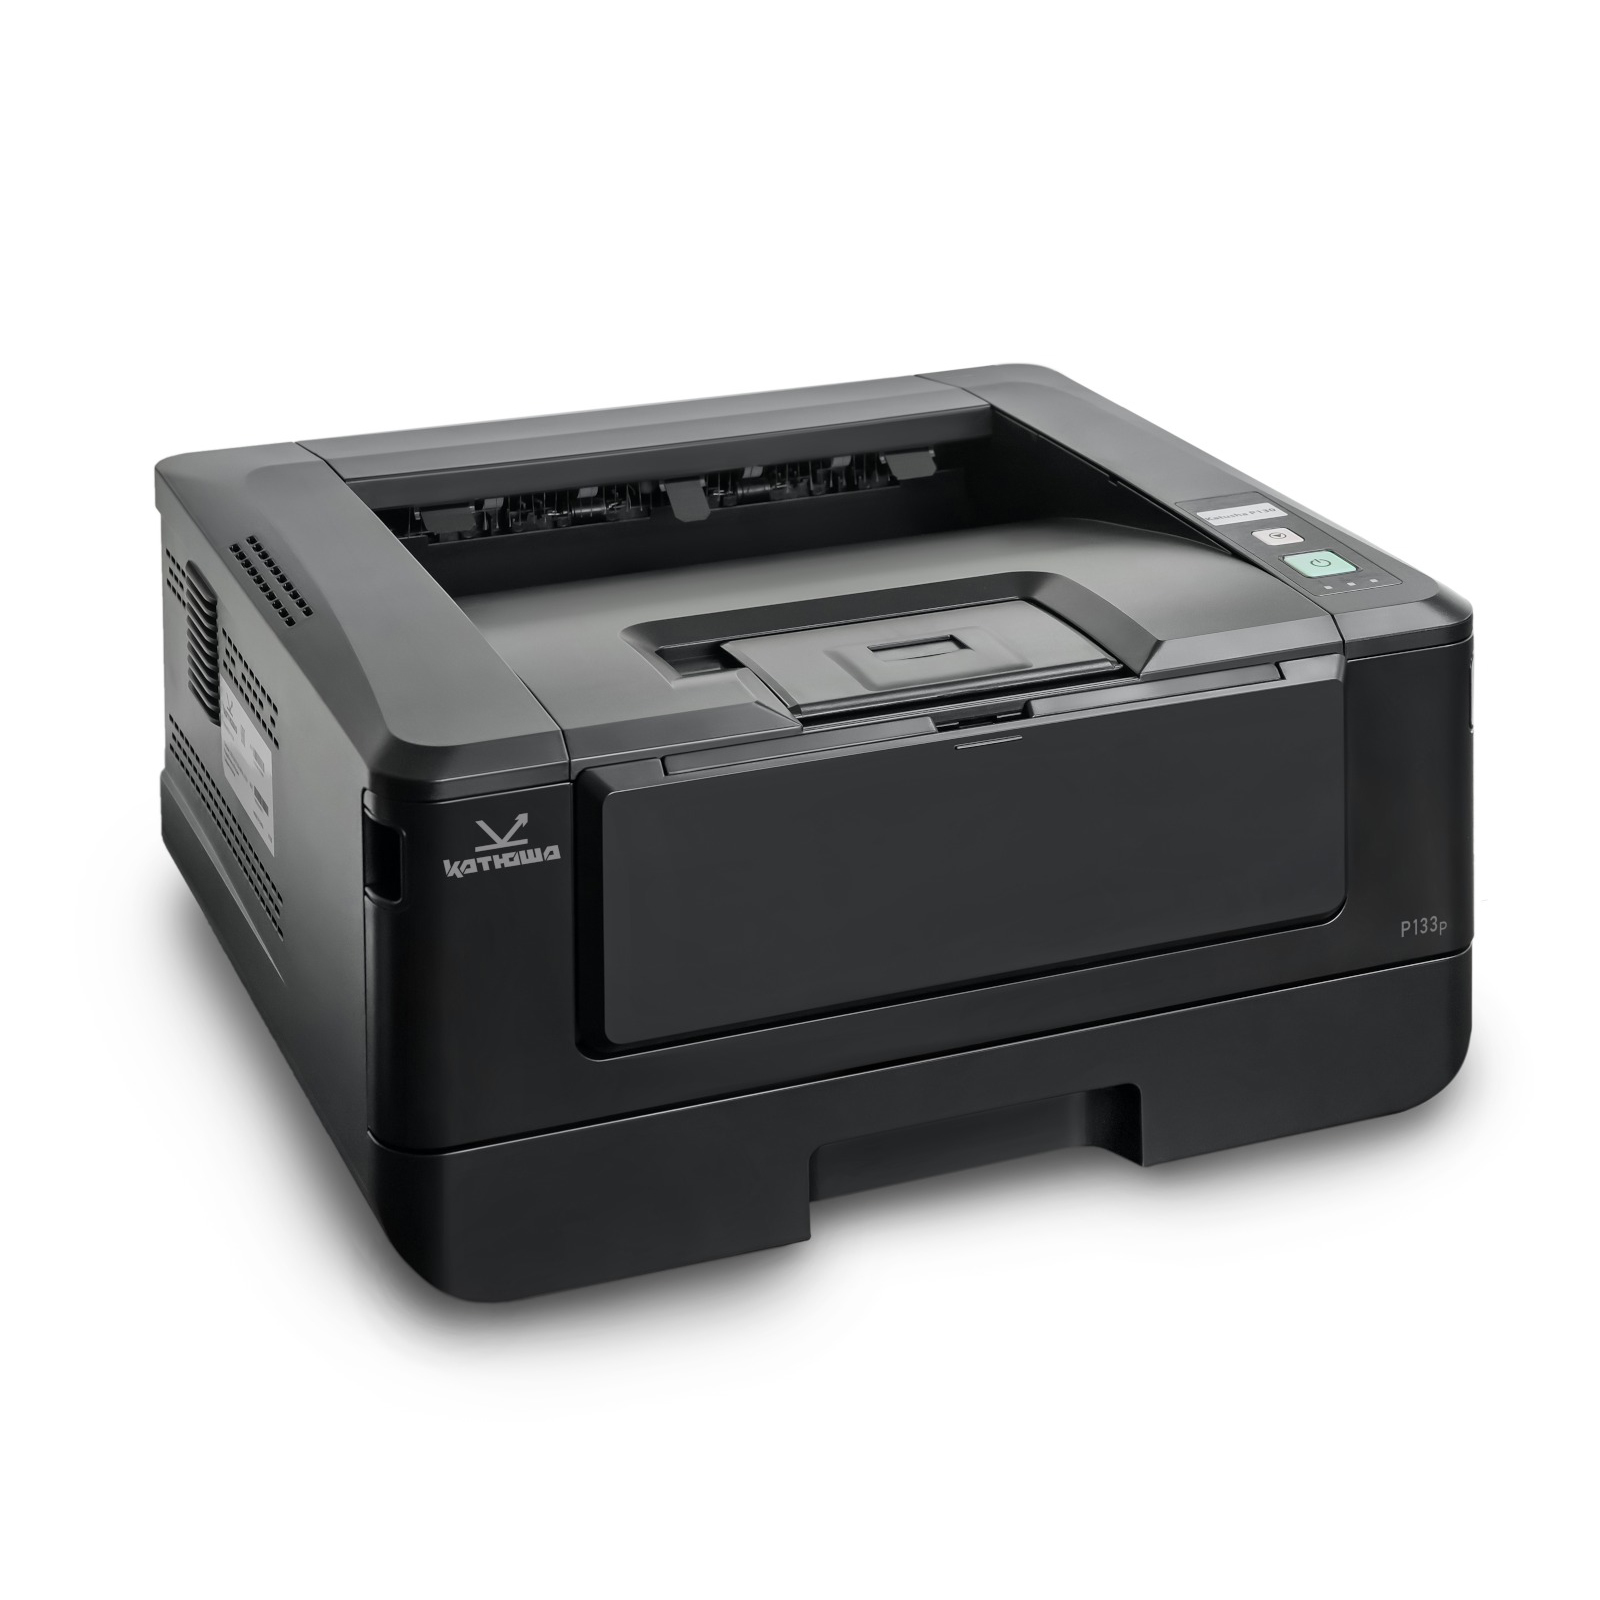 Принтер лазерный Катюша P133-256, черно-белая печать, 33 стр/мин, 1200 dpi, 256 МБ RAM, USB, Ethernet